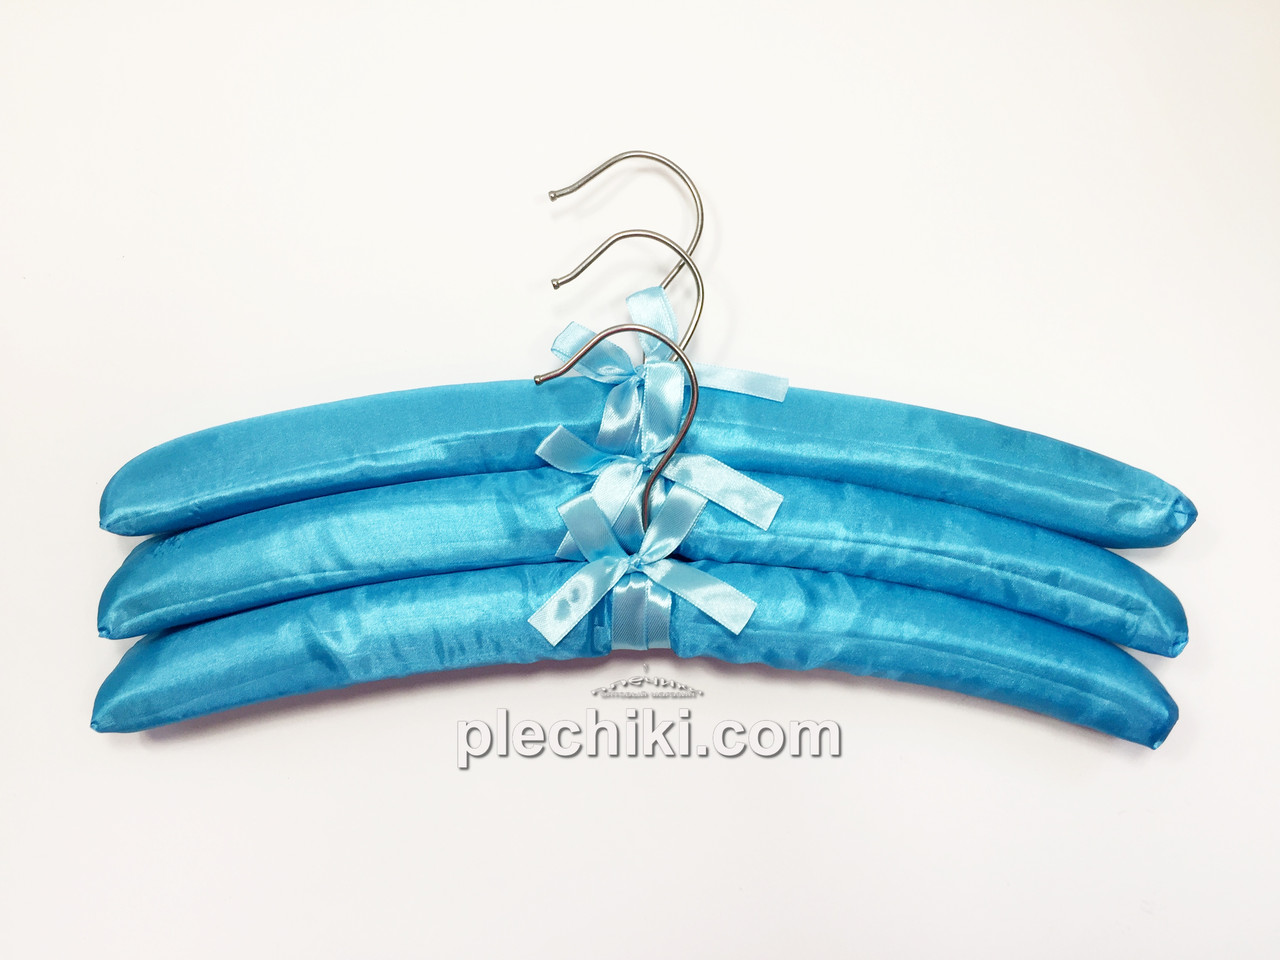 Плічка вішалки м'які сатинові для делікатних речей блакитного кольору, 3 штуки